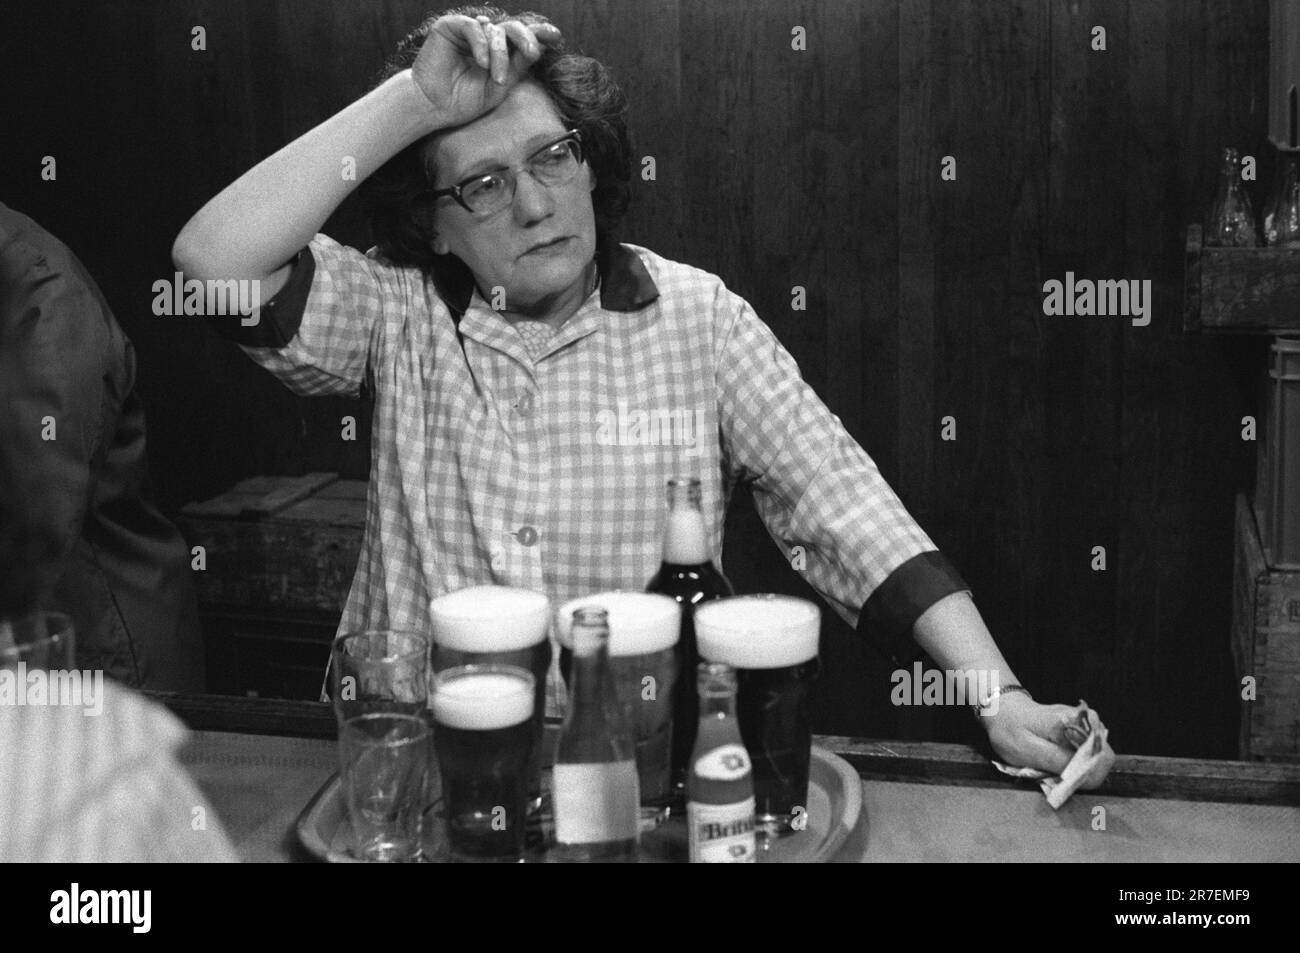 Das Barpersonal, eine Barkeeper, die einen typischen Hauskittel trägt, über ihren Alltagskleidung, sie ist erschöpft, müde, dies ist ein Teilzeitjob am Abend. Byker and St Peters Working Men's Club, Newcastle upon Tyne, Tyne and Wear, Nordengland um 1973. 1970S UK HOMER SYKES Stockfoto